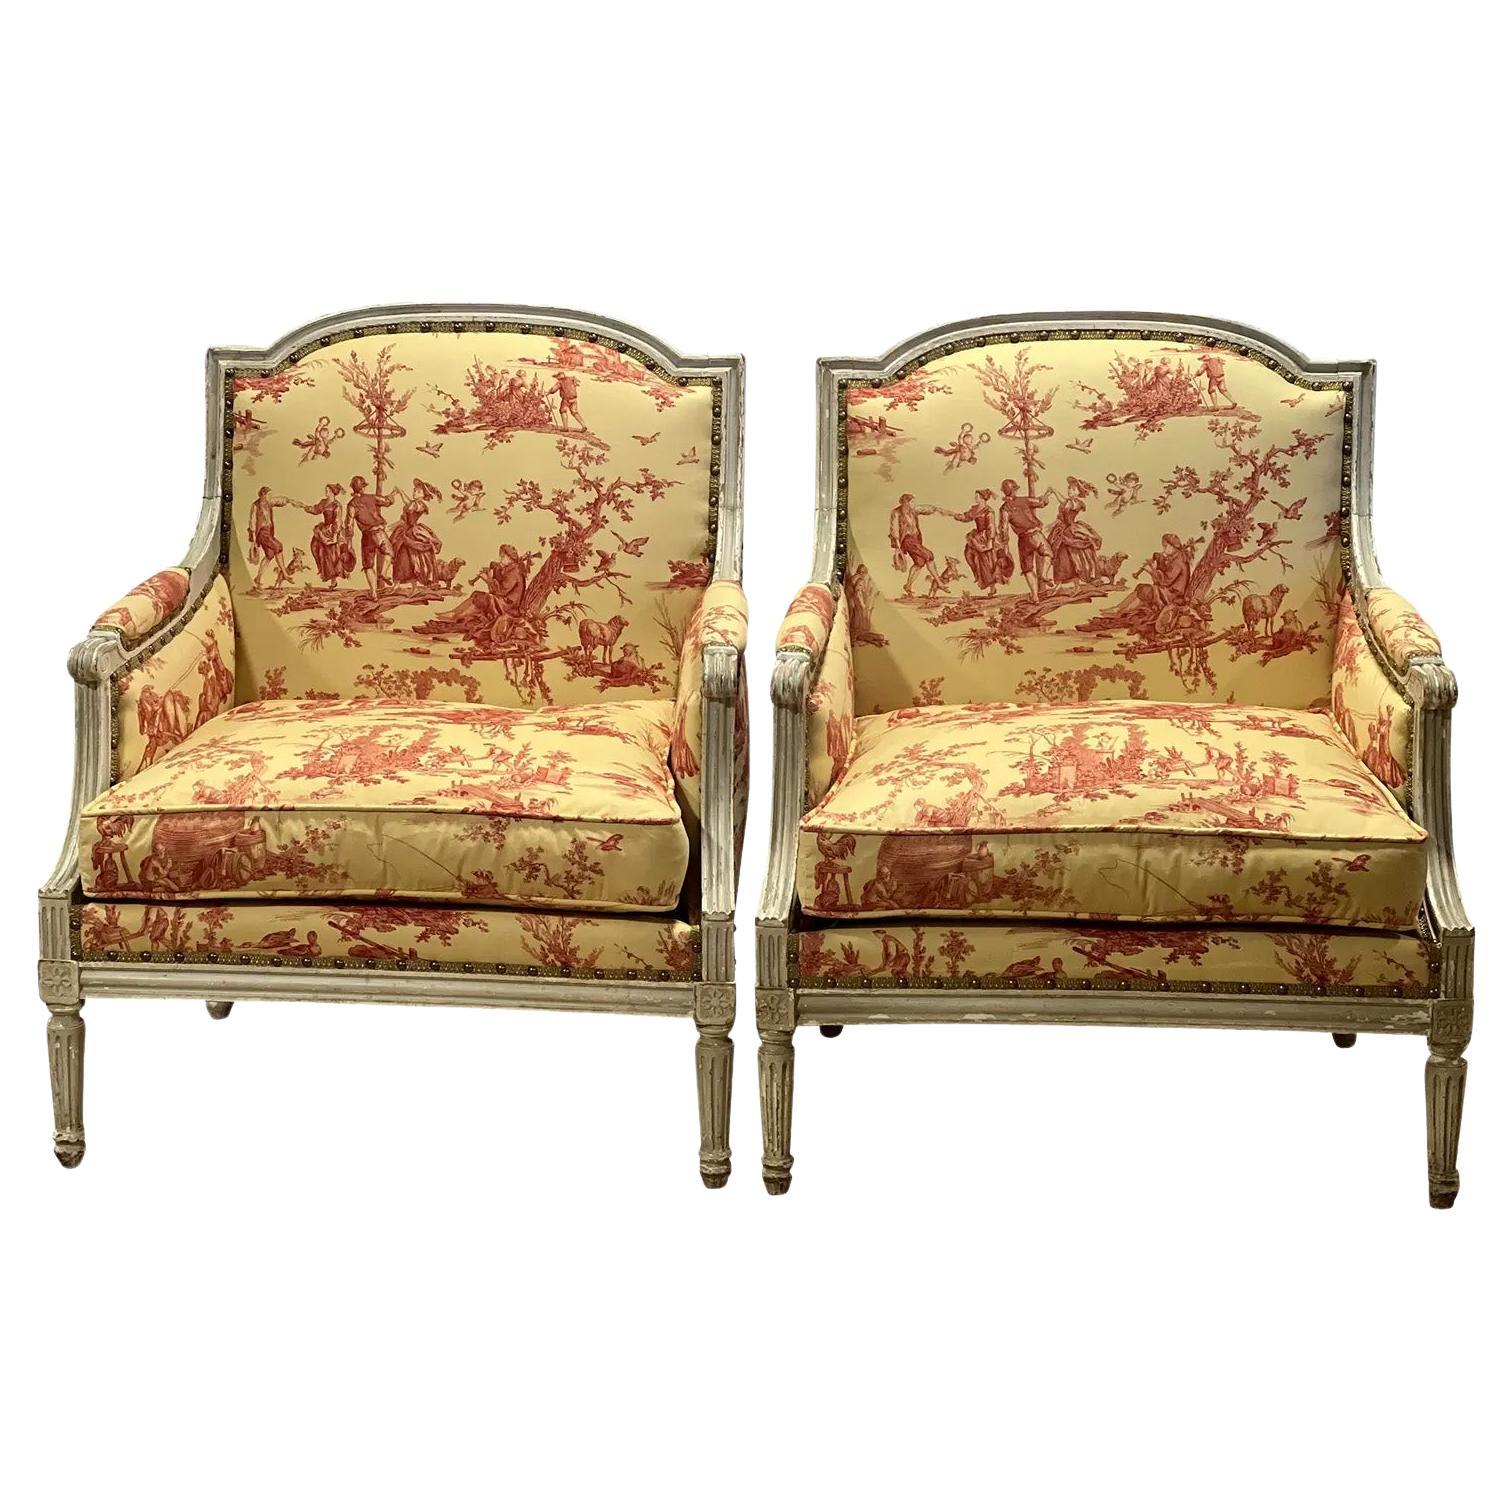 Paire de chaises marquis françaises de style Louis XVI de la fin du 19e siècle